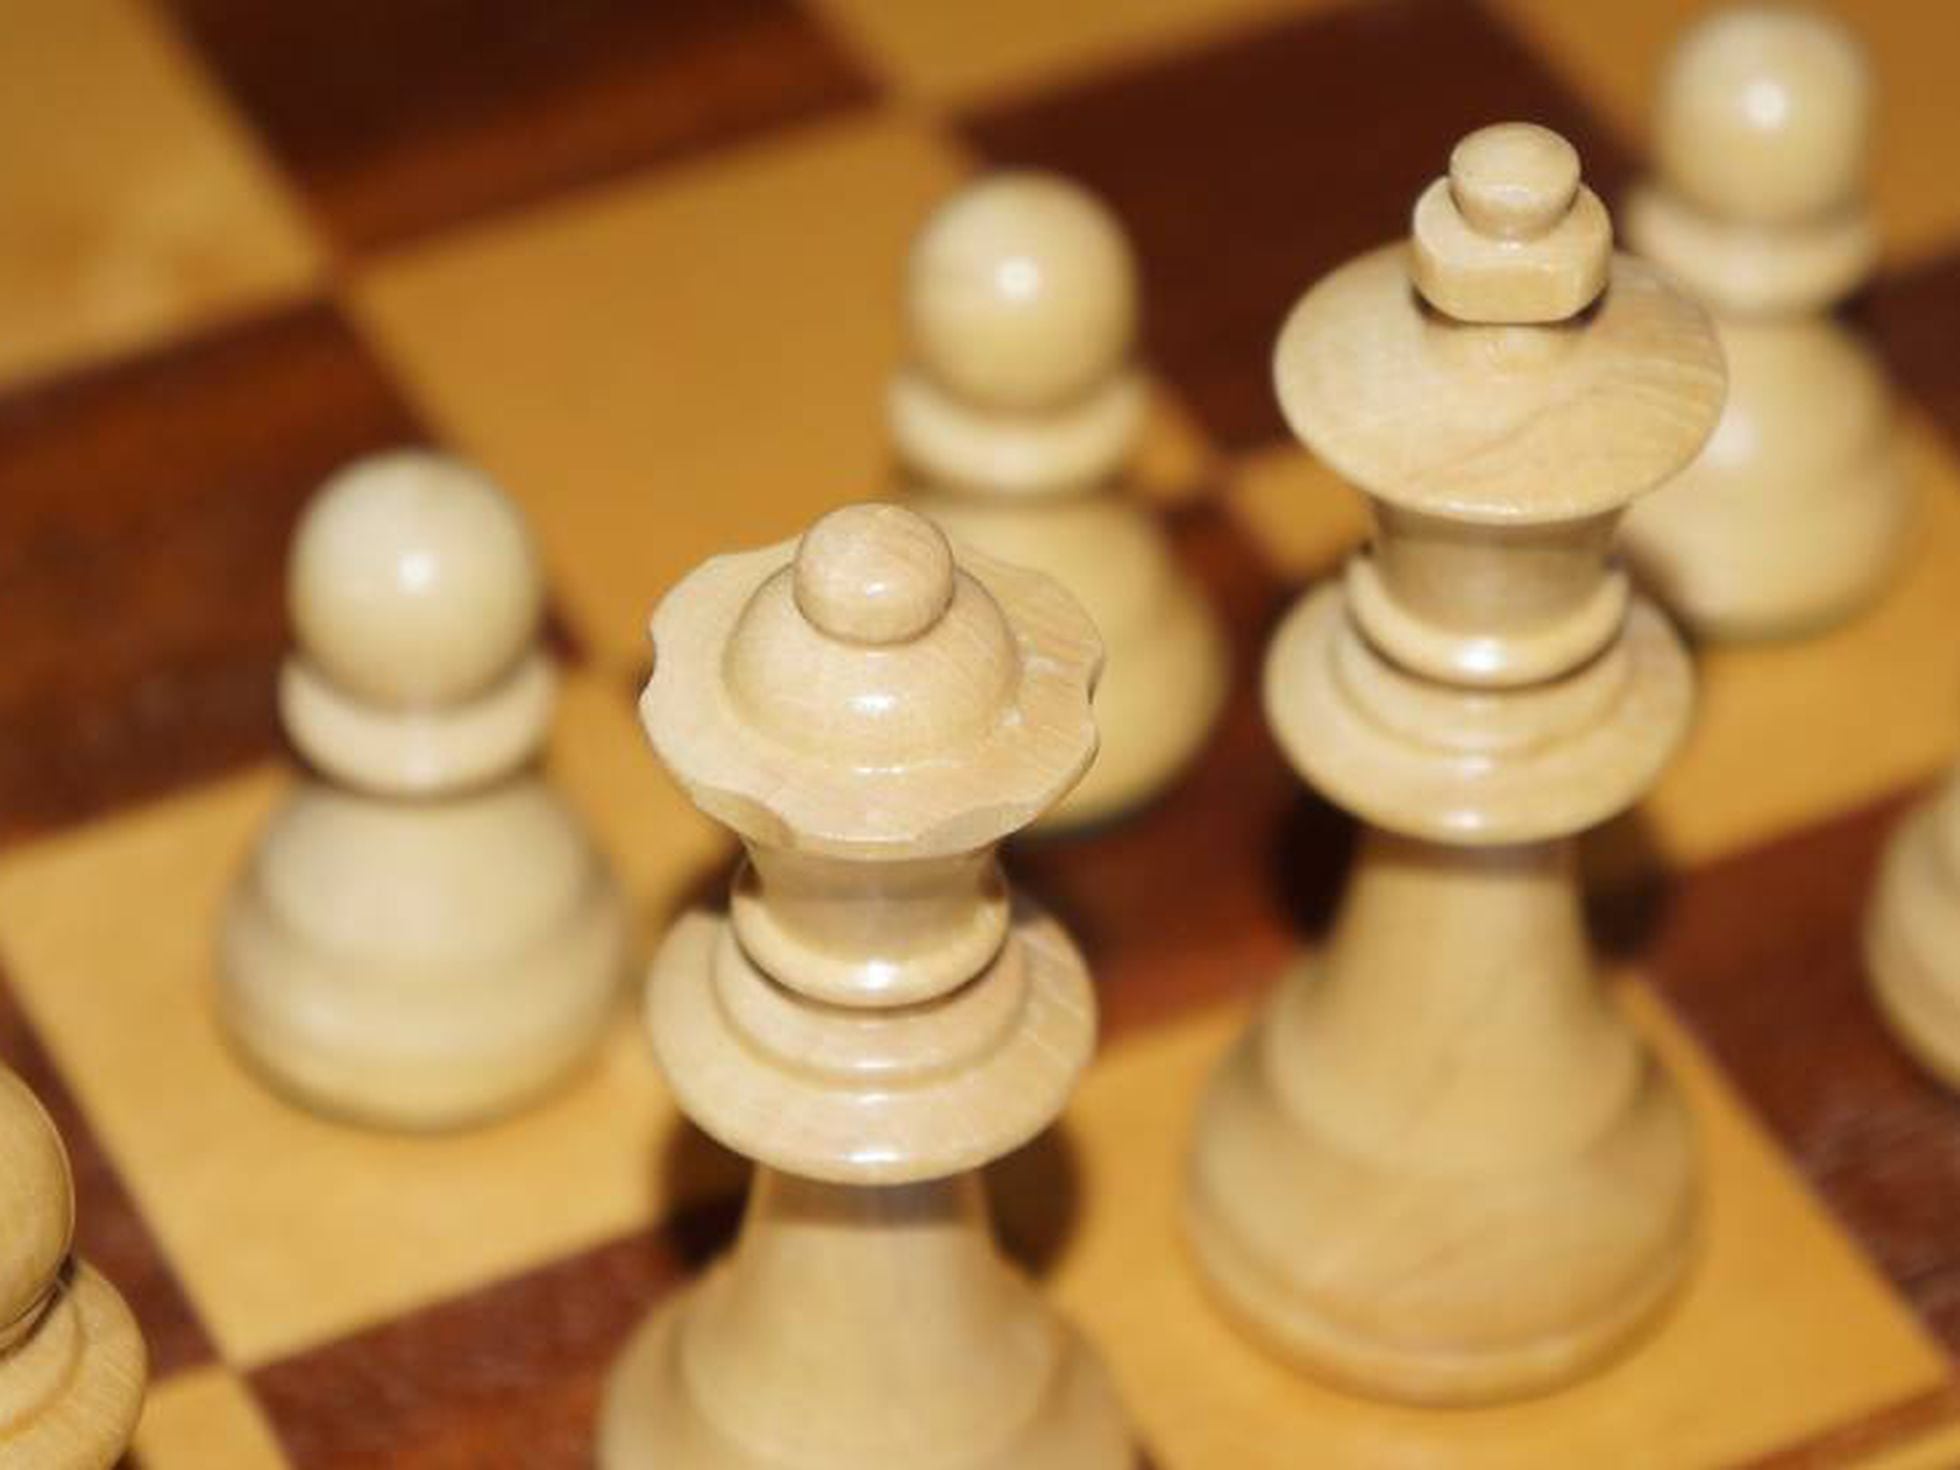 Quem é a rainha do tabuleiro de Xadrez da sua organização?